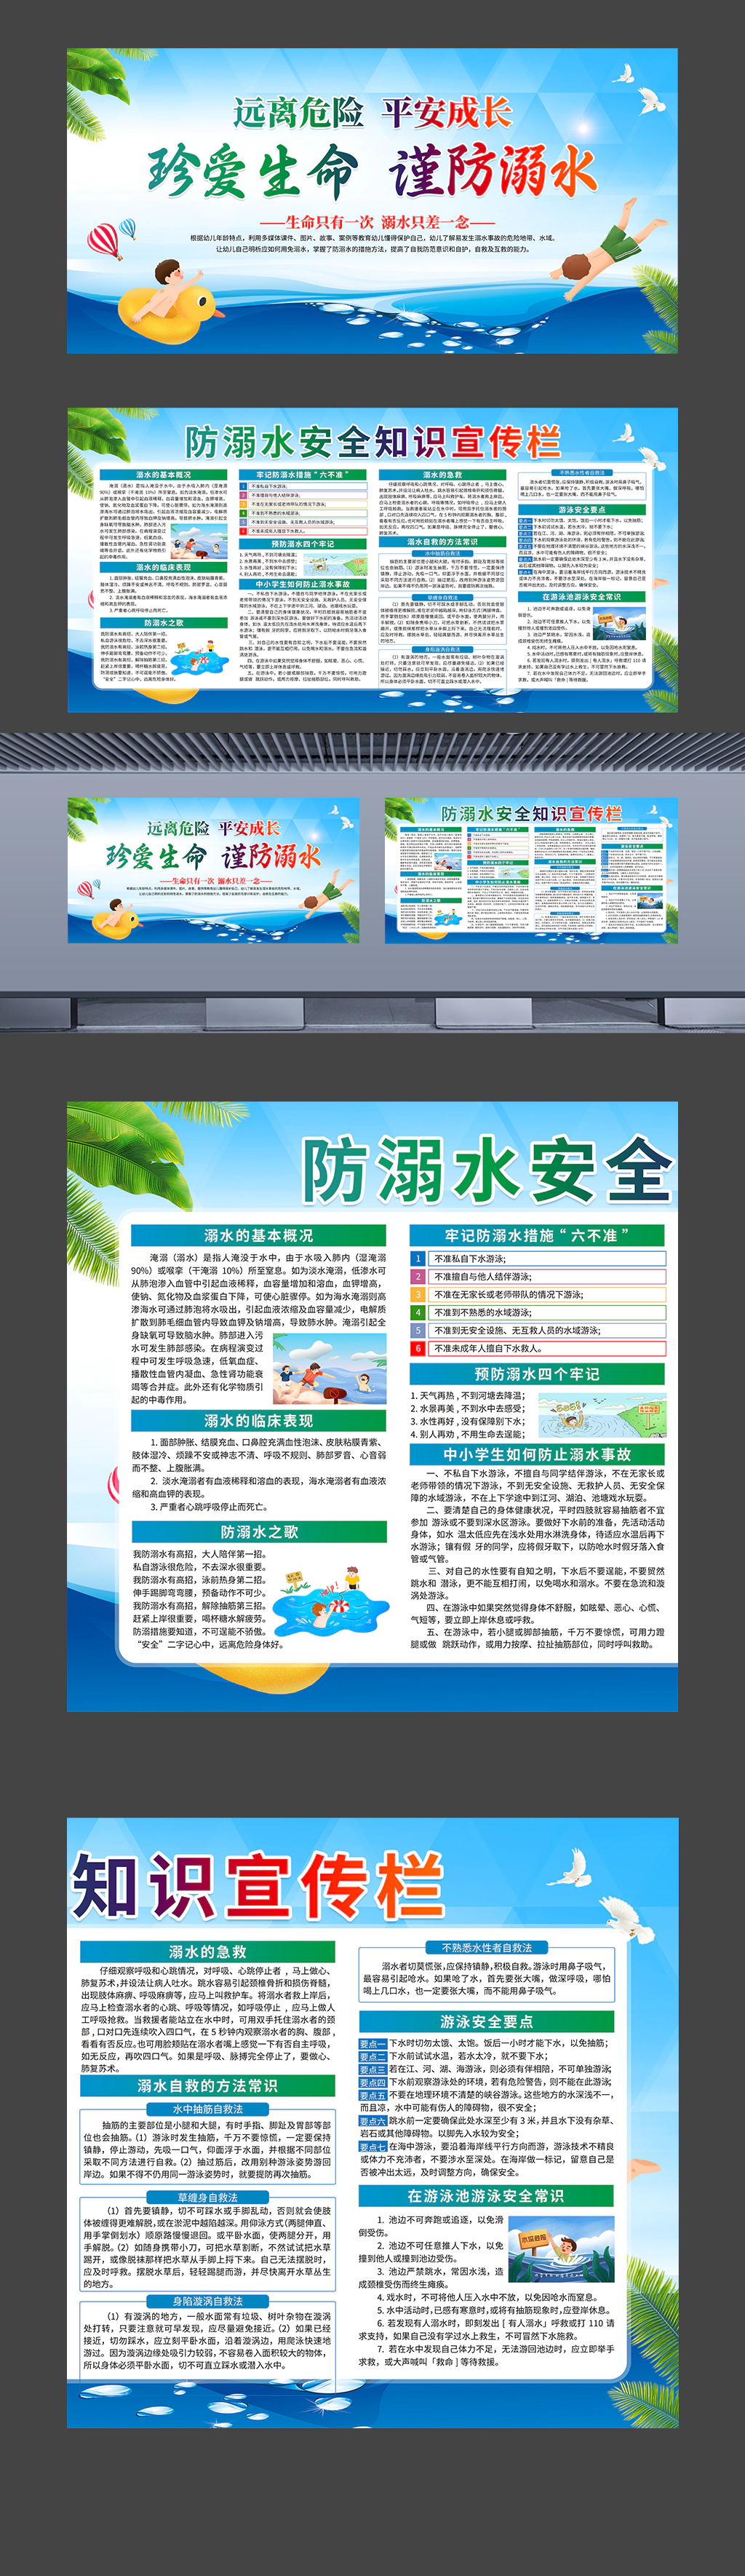 防溺水安全知识宣传栏中小学暑期安全教育展板